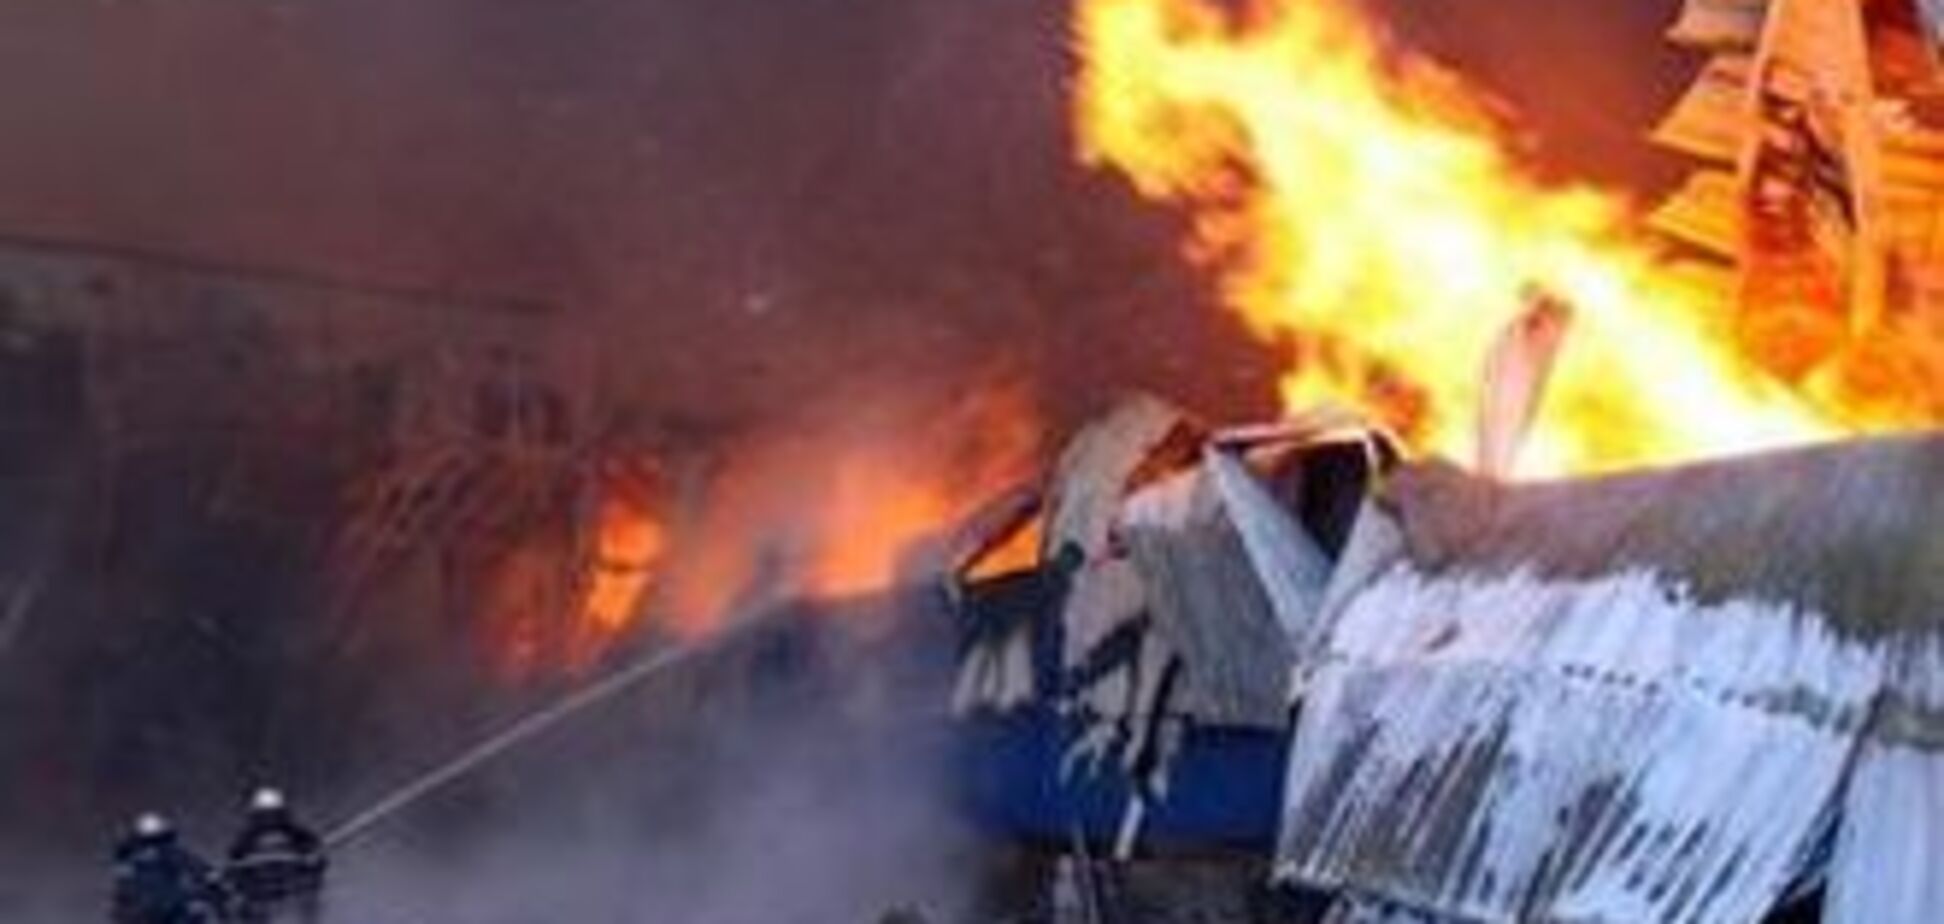 На місці пожежі в Луганську знайшли обгорілий труп